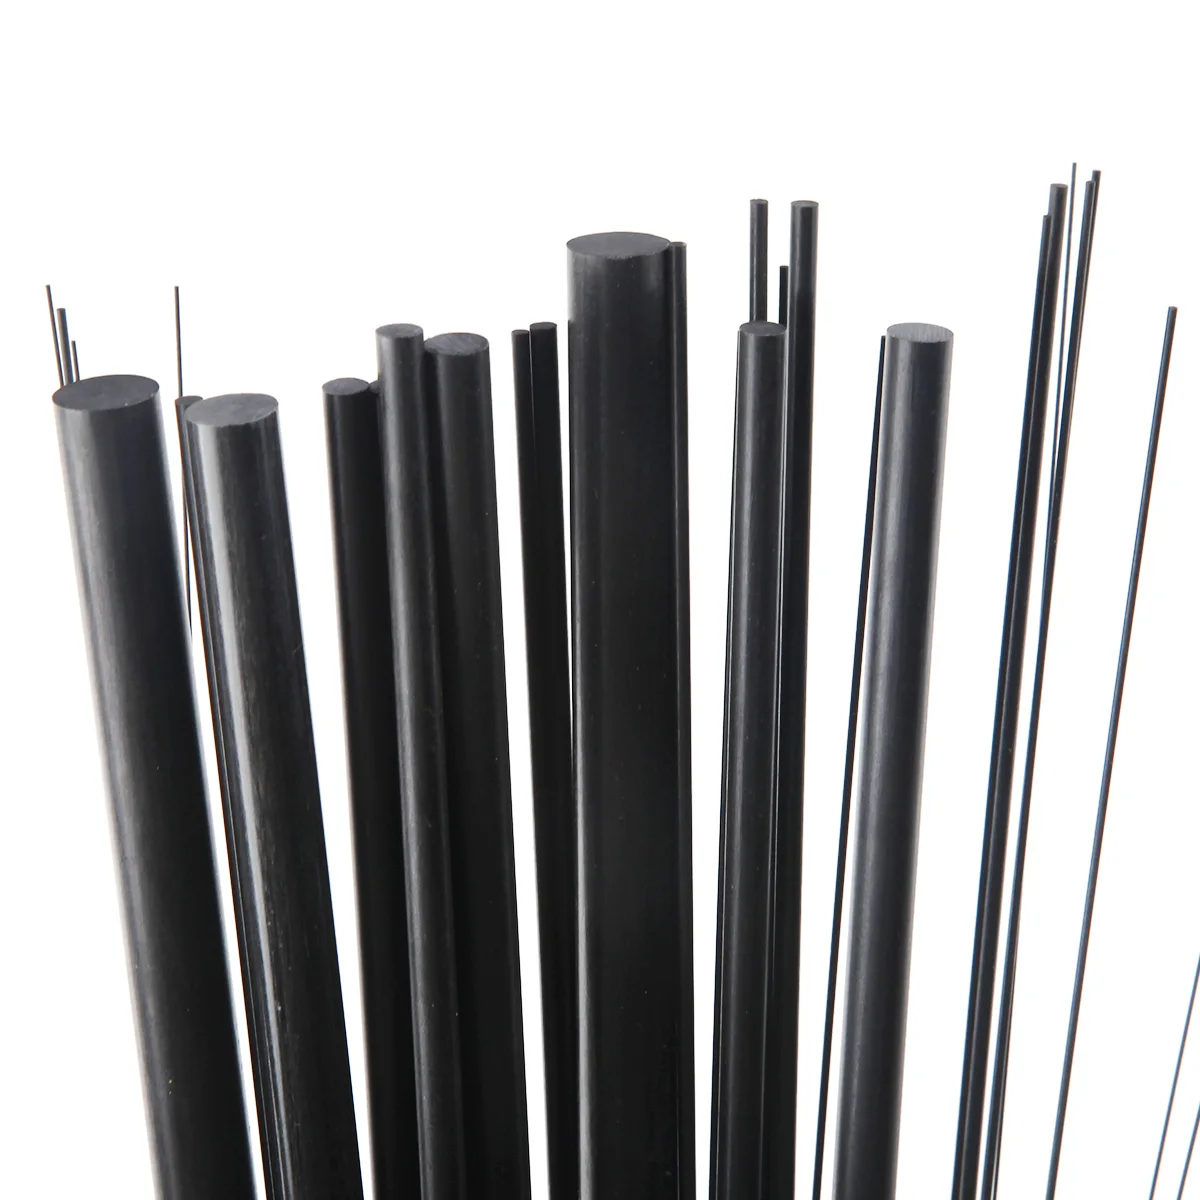 Does not apply 10pcs 1 mm x 500mm Length Carbon Fiber Rods Matte Pole 10PC 1MM